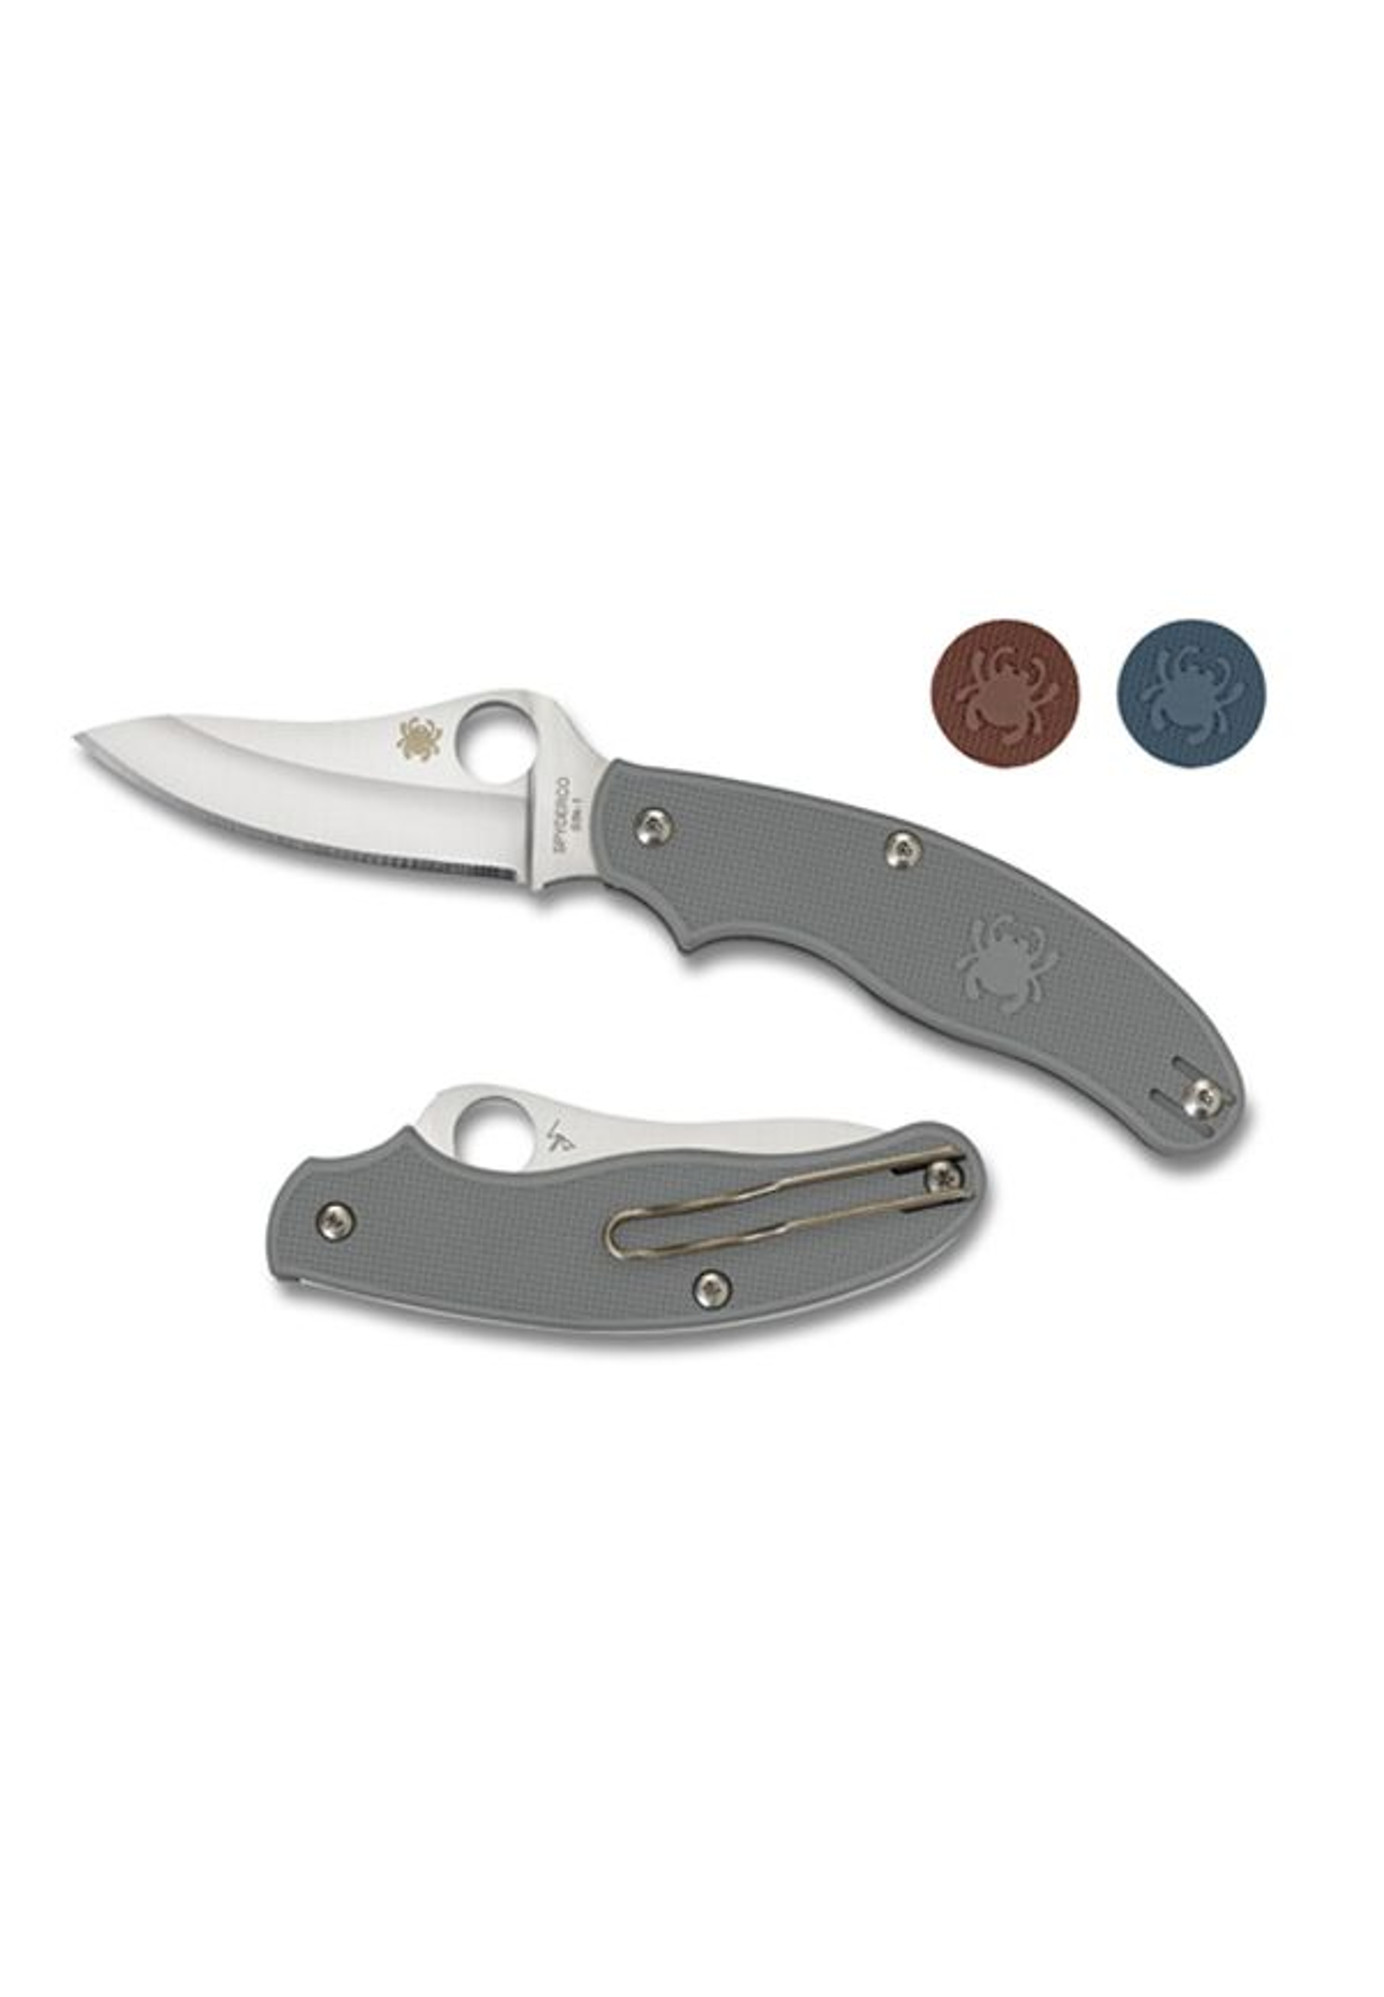 Spyderco UK Penknife Gray FRN Drop Point Plain Edge Folding Knife